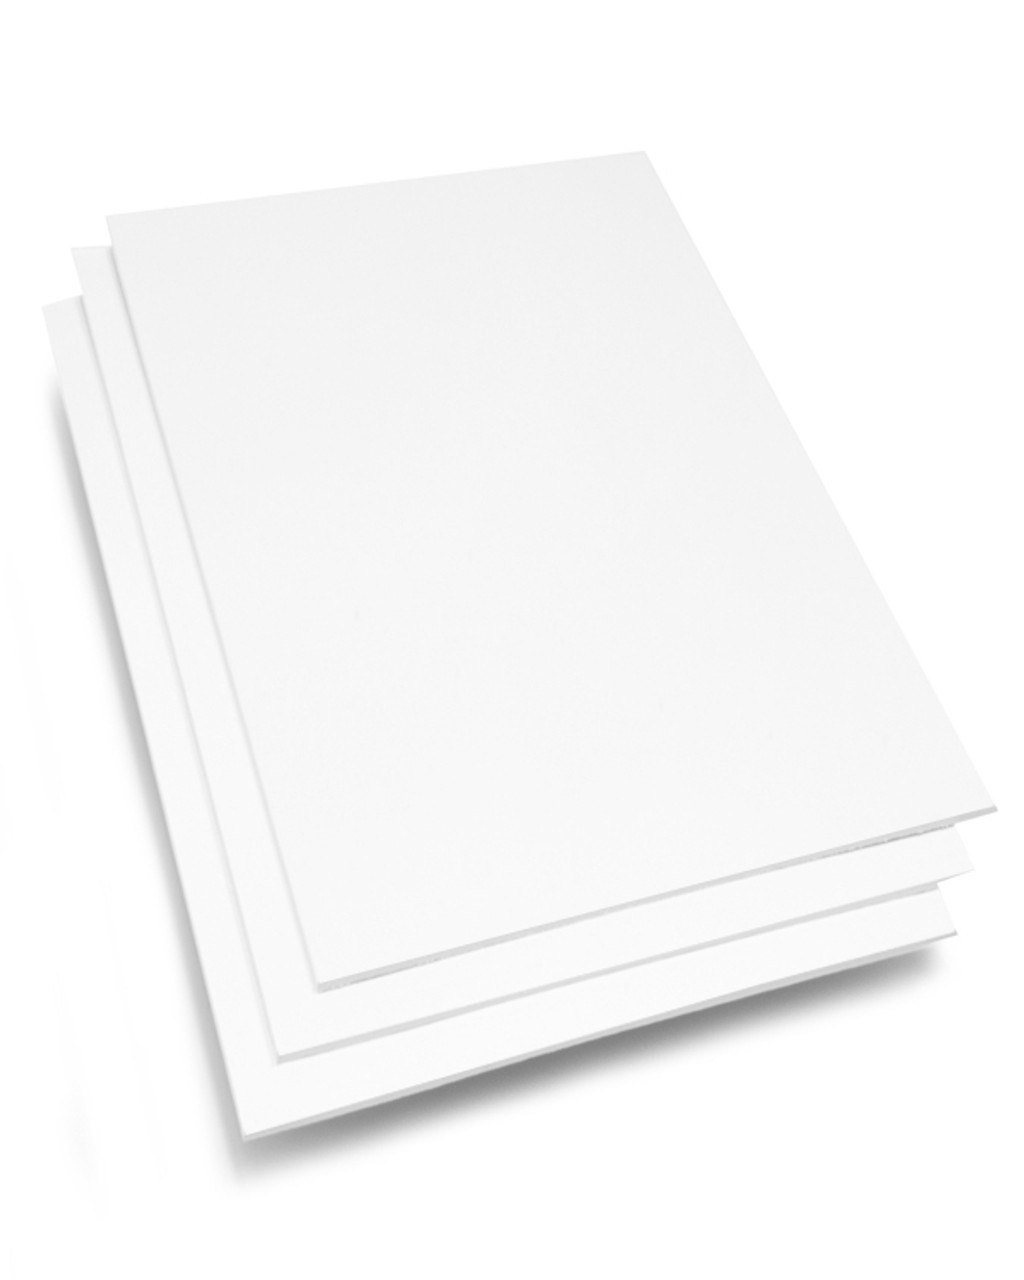 12x18 Standard White Backer Board - Shop Now